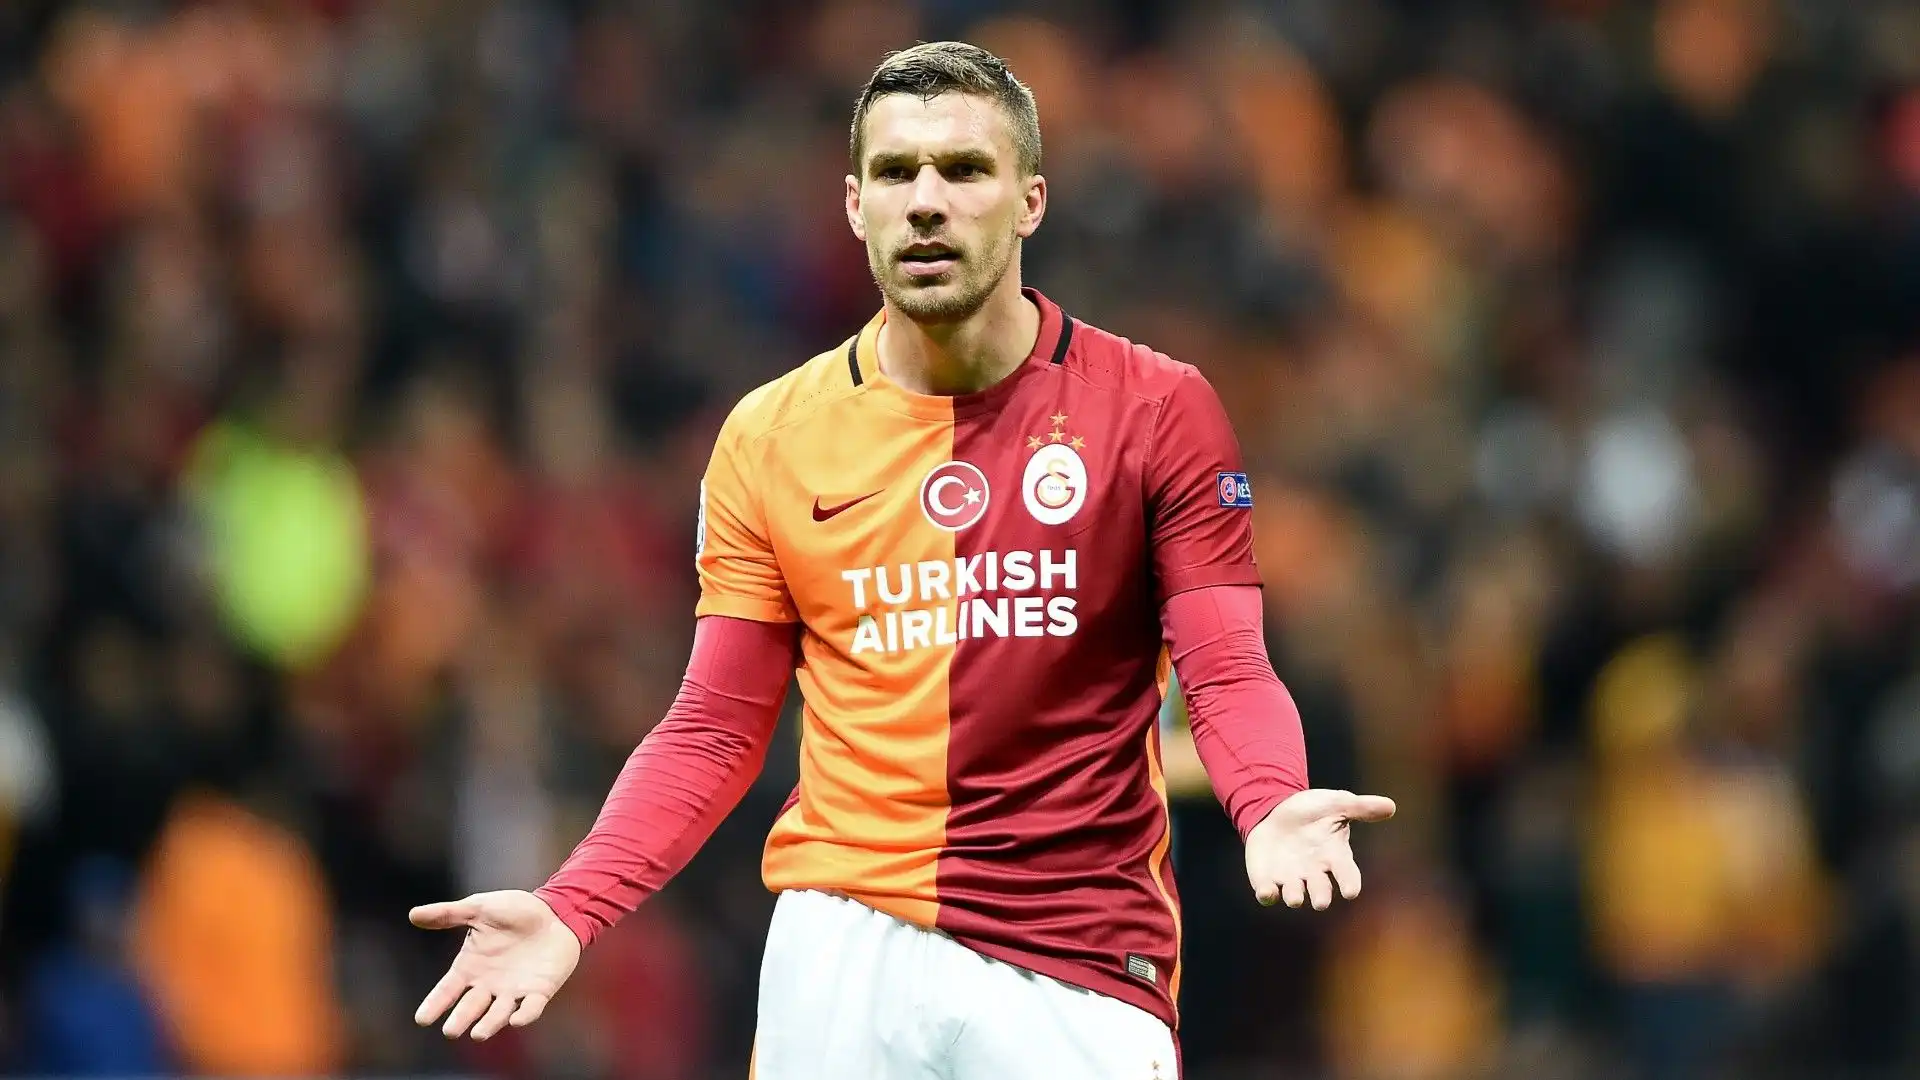 Dopo l'esperienza poco esaltante all'Inter, Lucas Podolski nel 2015 si è trasferito in Turchia, dove è rimasto fino al 2017